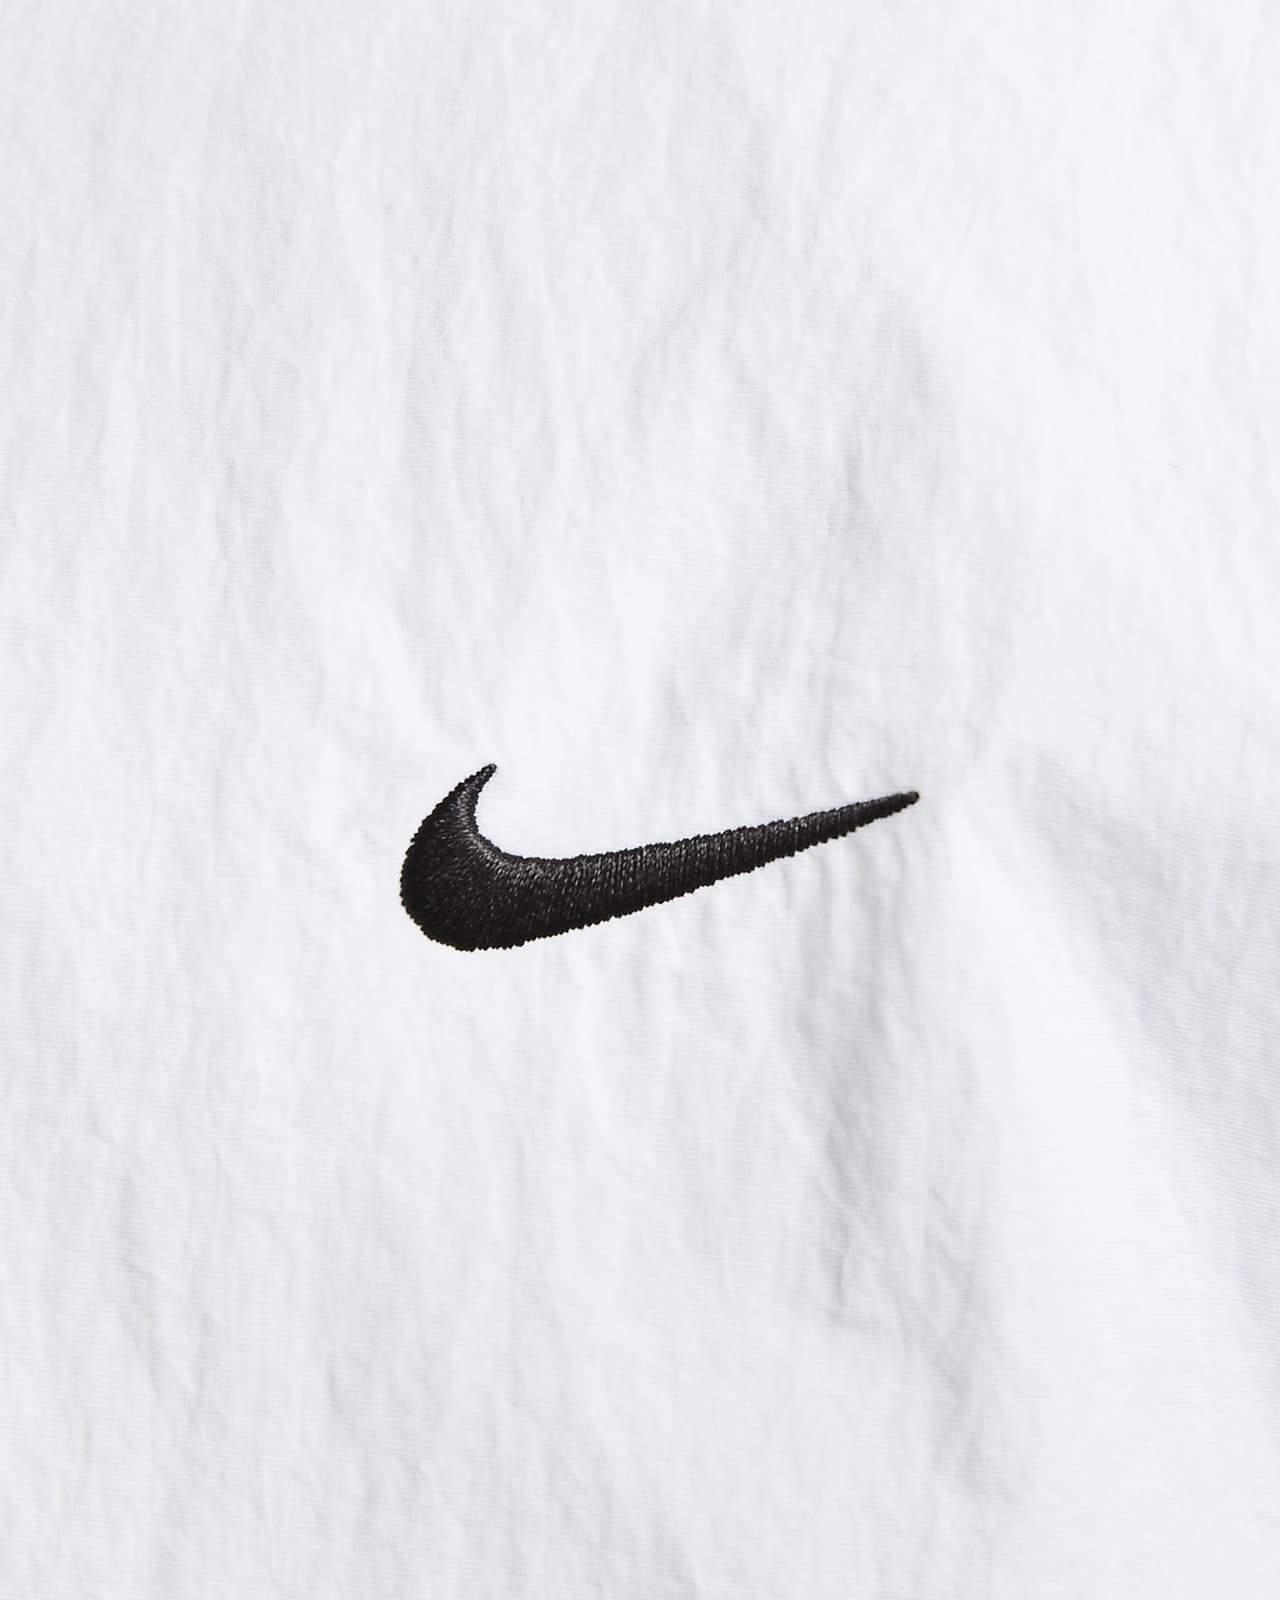 Veste de survêtement tissée Nike Sportswear Solo Swoosh pour homme